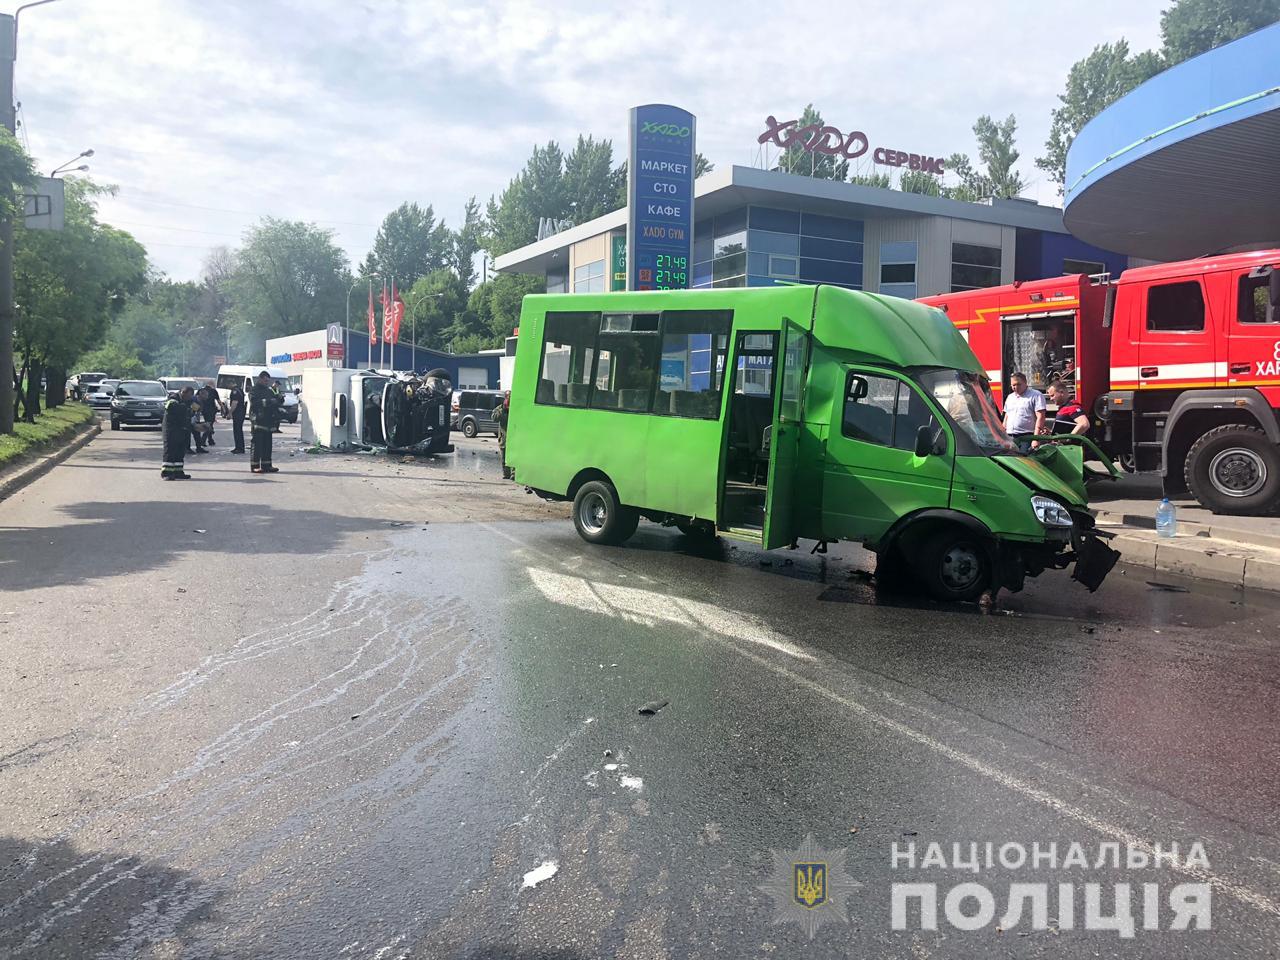 В Харькове маршрутка влетела в авто, 15 пострадавших